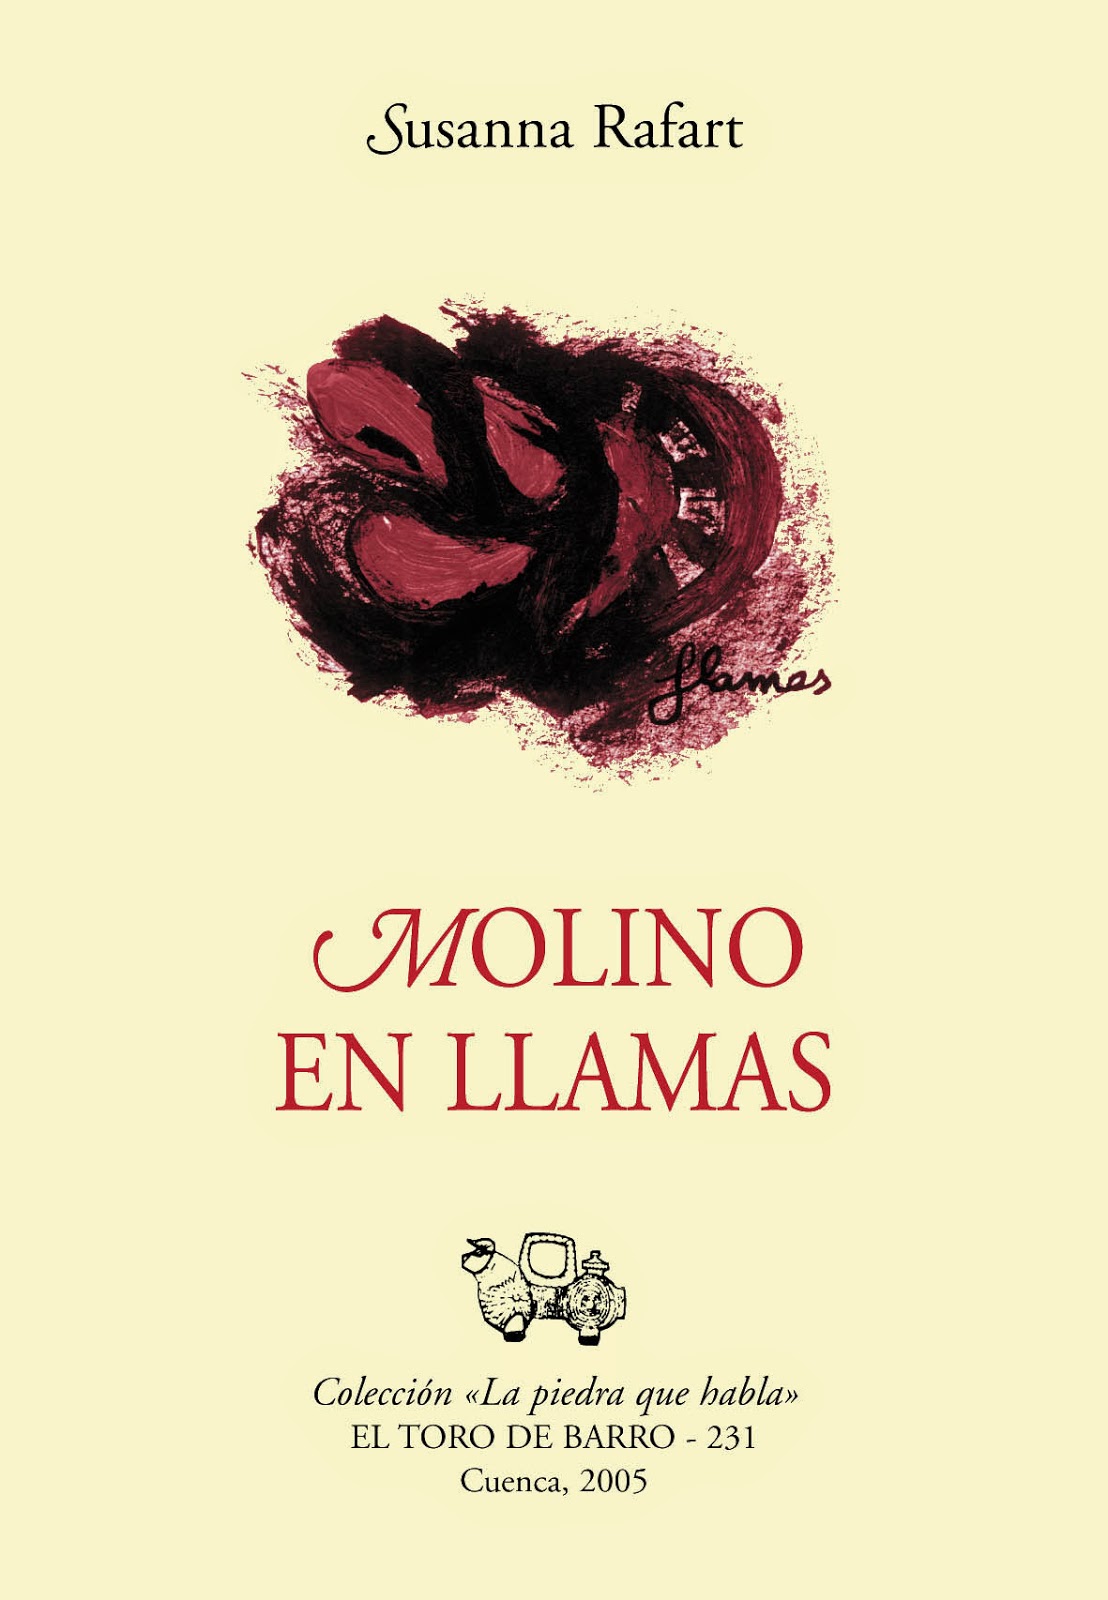 Susanna Rafart, "Laberinto en llamas", Col. La piedra que habla, Ed. El toro de Barro, Tarancón de Cuenca 2005